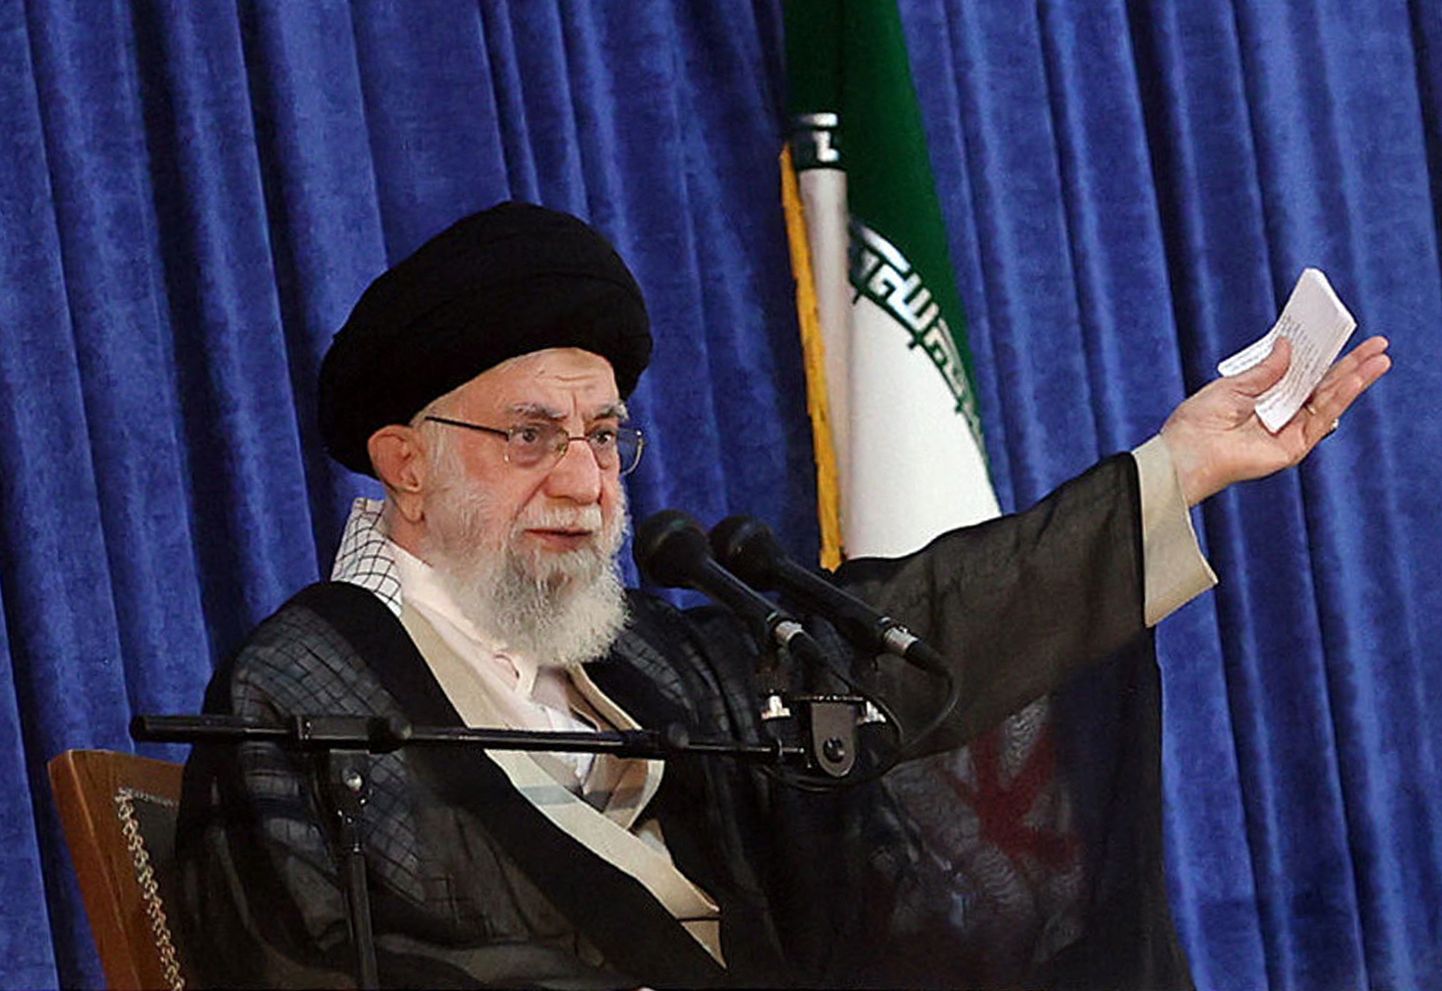 Iraani kõrgeim juht ajatolla Ali Khamenei laupäeval, 4. juunil 2022 ajatolla Ruhollah Khomenei surmapäeva tseremoonial kõnet pidamas.